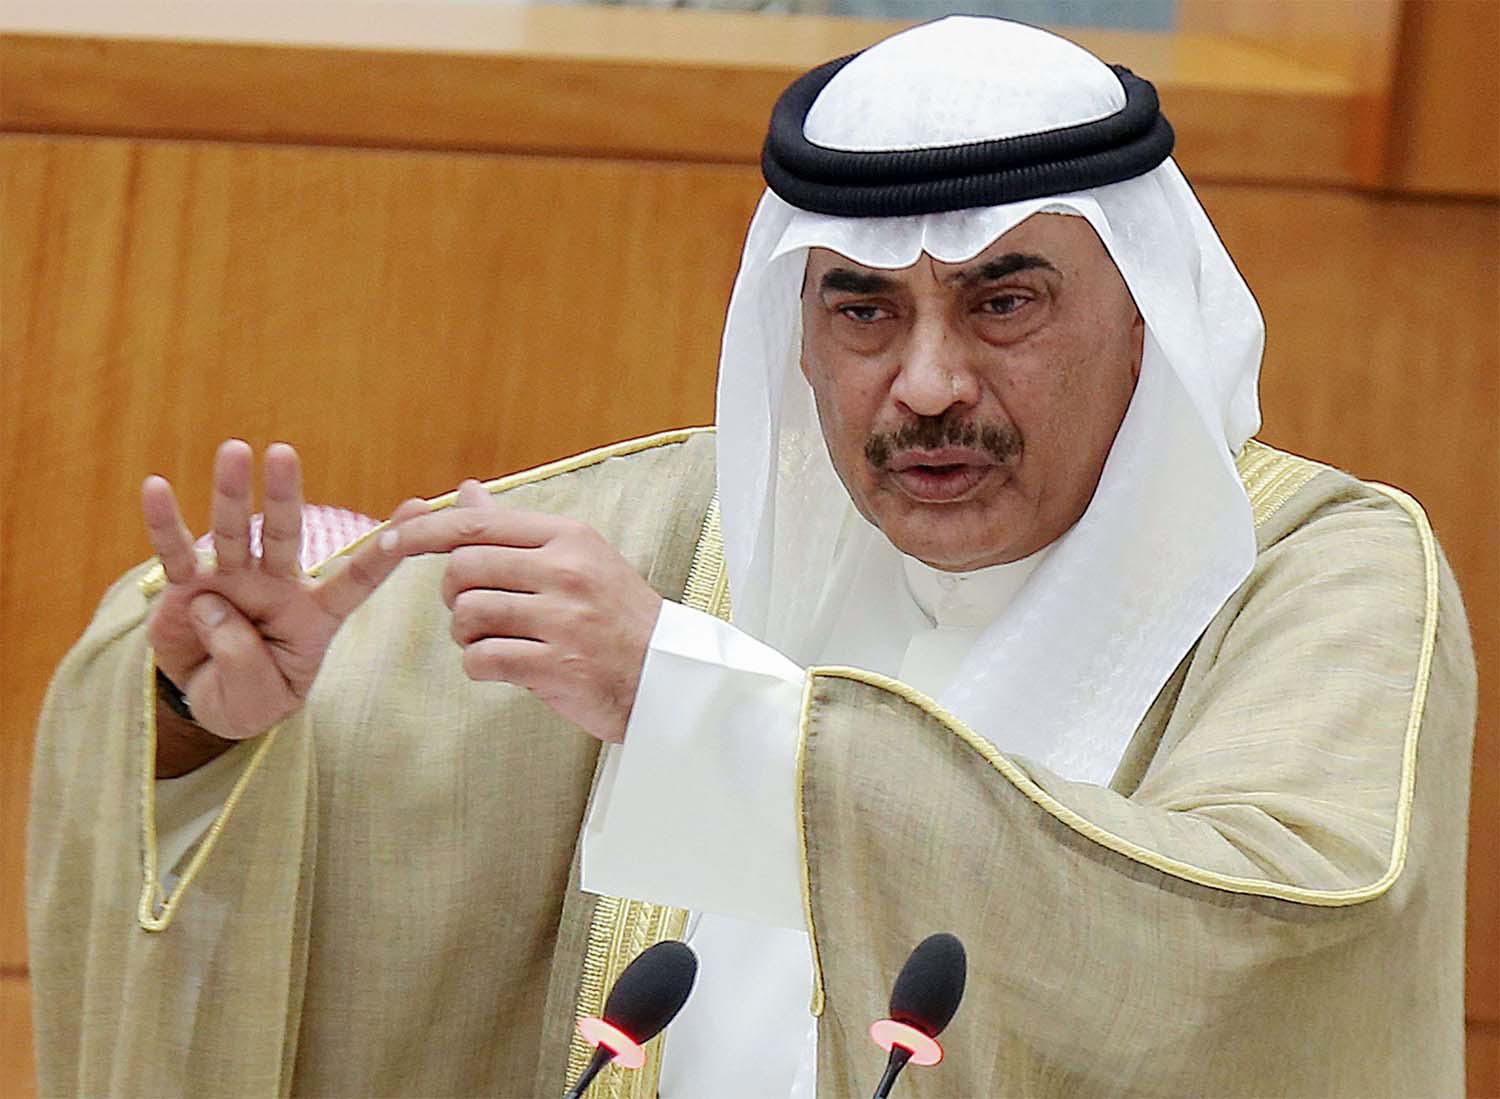 Kuwaiti prime minister Sheikh Sabah al-Khaled al-Sabah